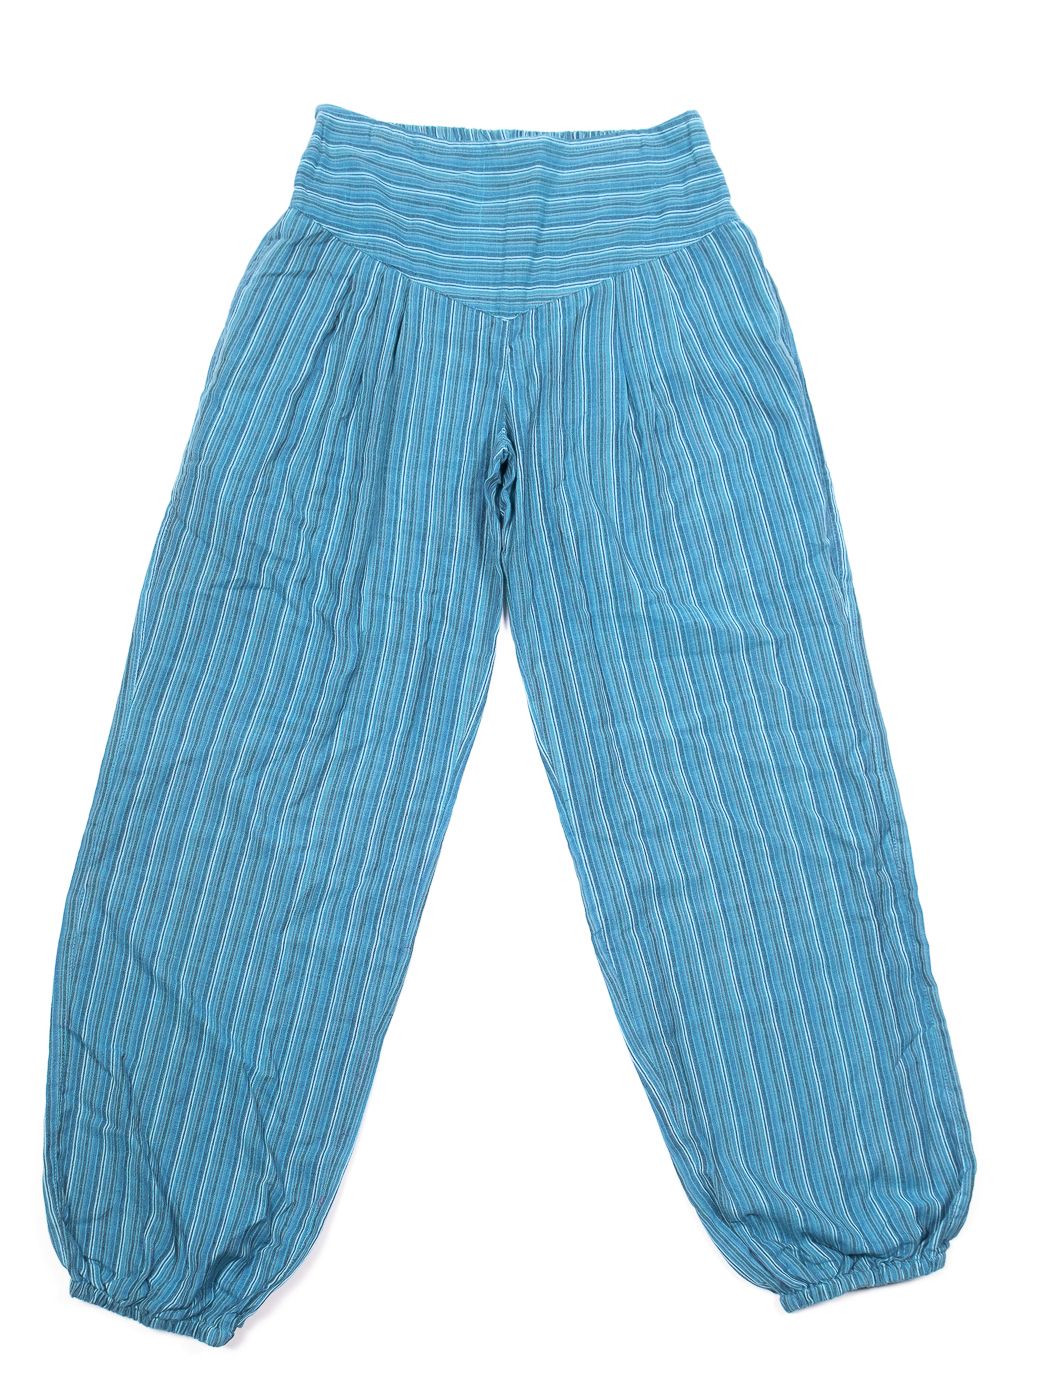 Kalhoty ALI, bavlna Nepál NT0096 01 026 KENAVI